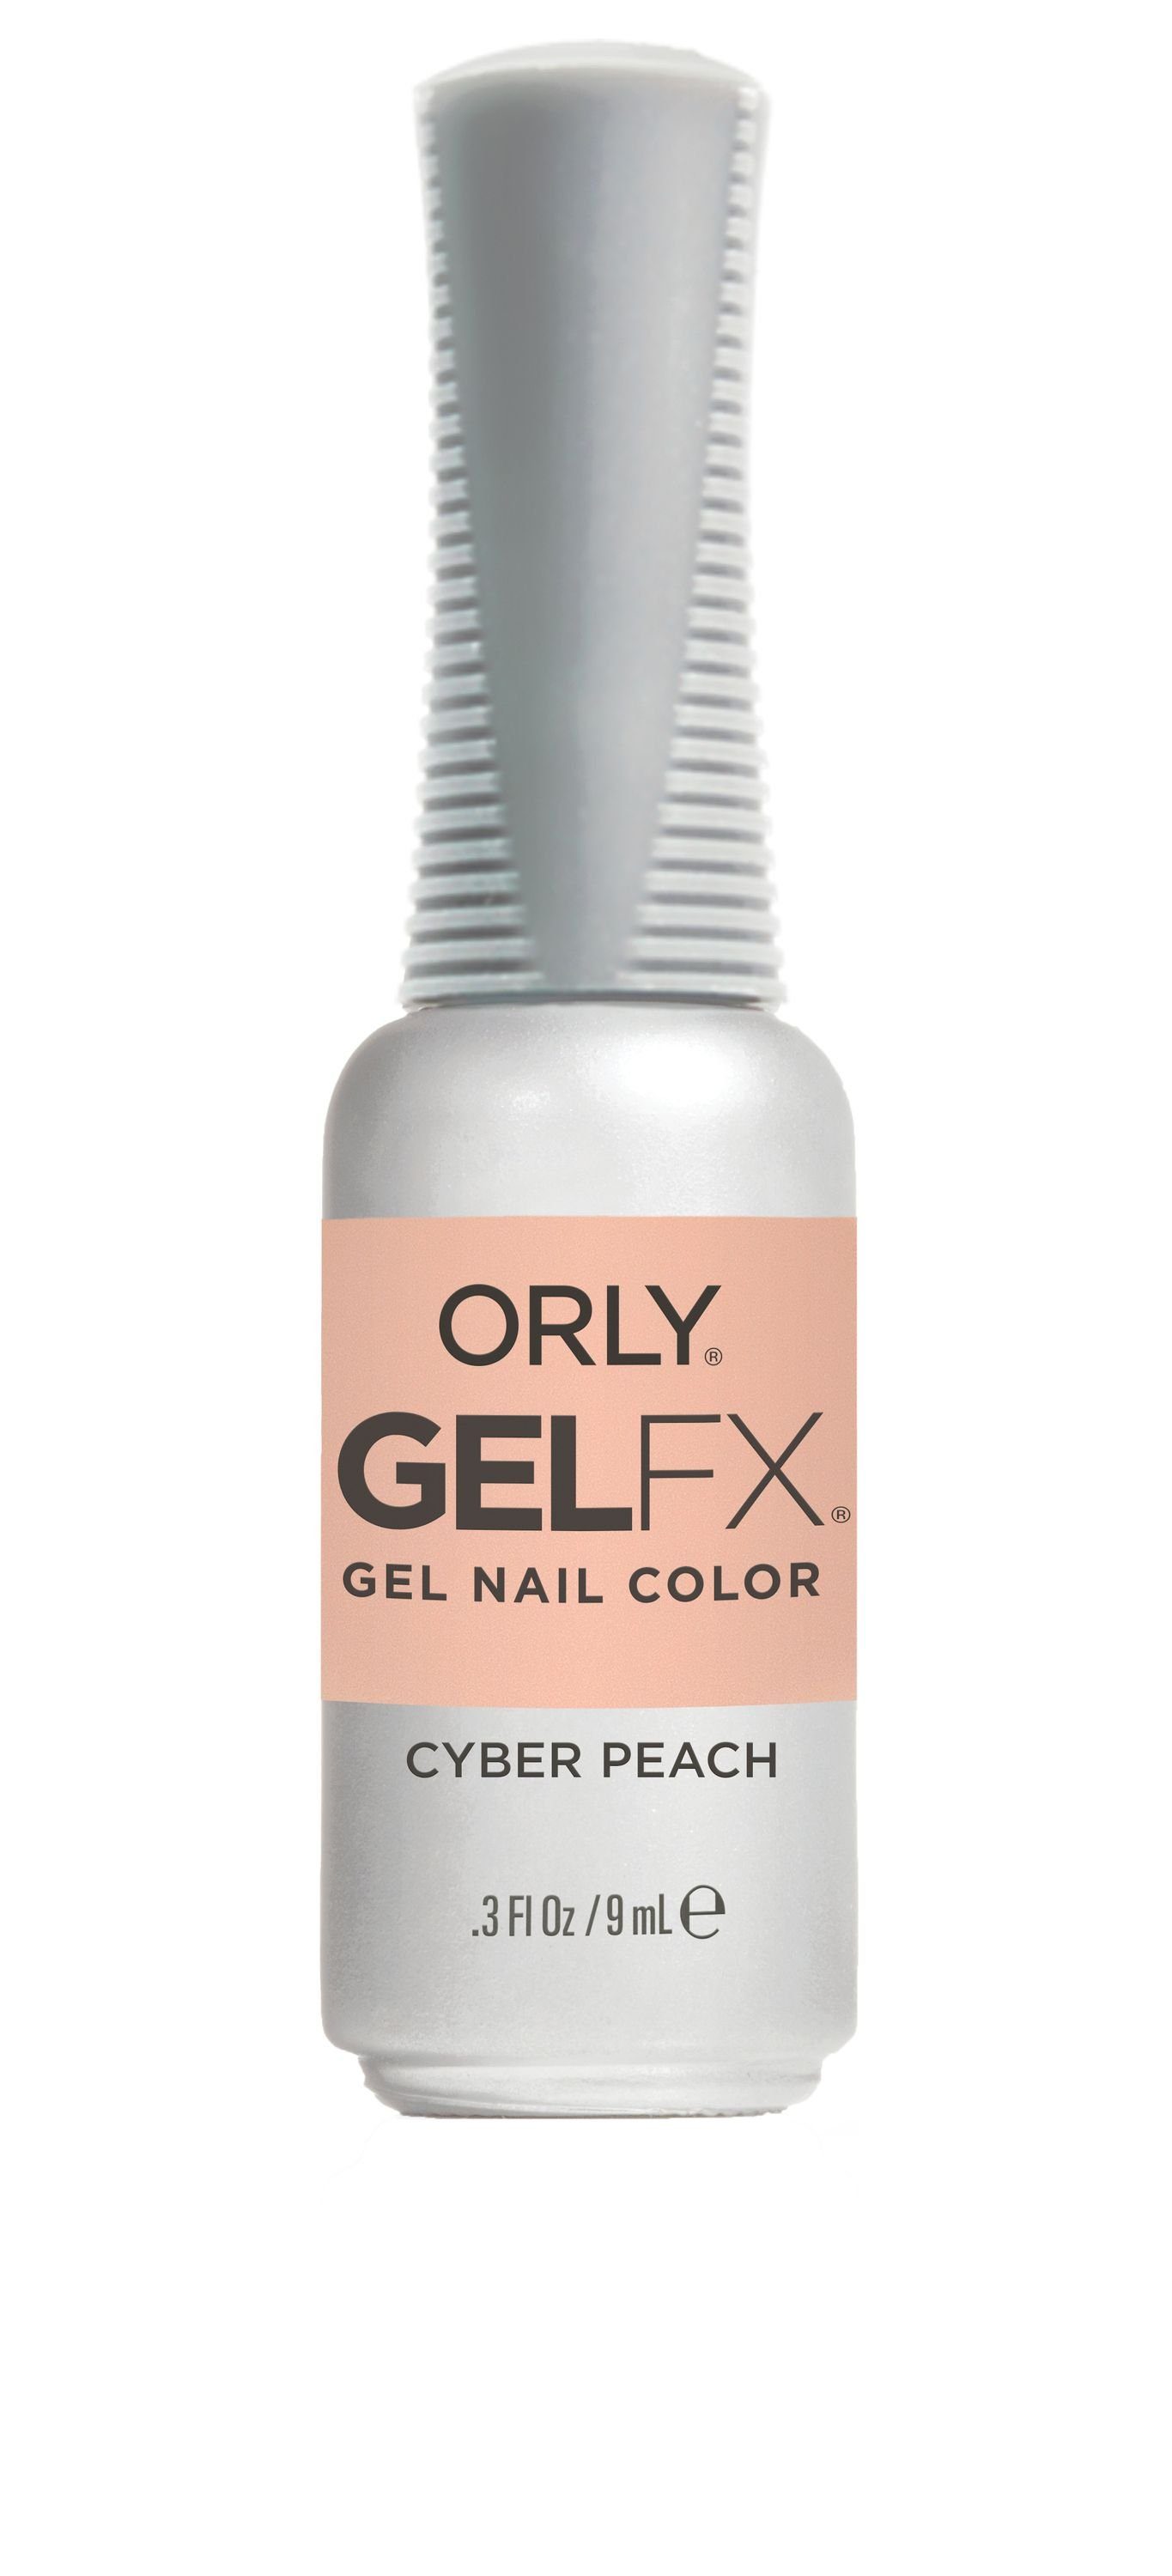 ORLY UV-Nagellack GEL FX Cyber Peach, 9ML